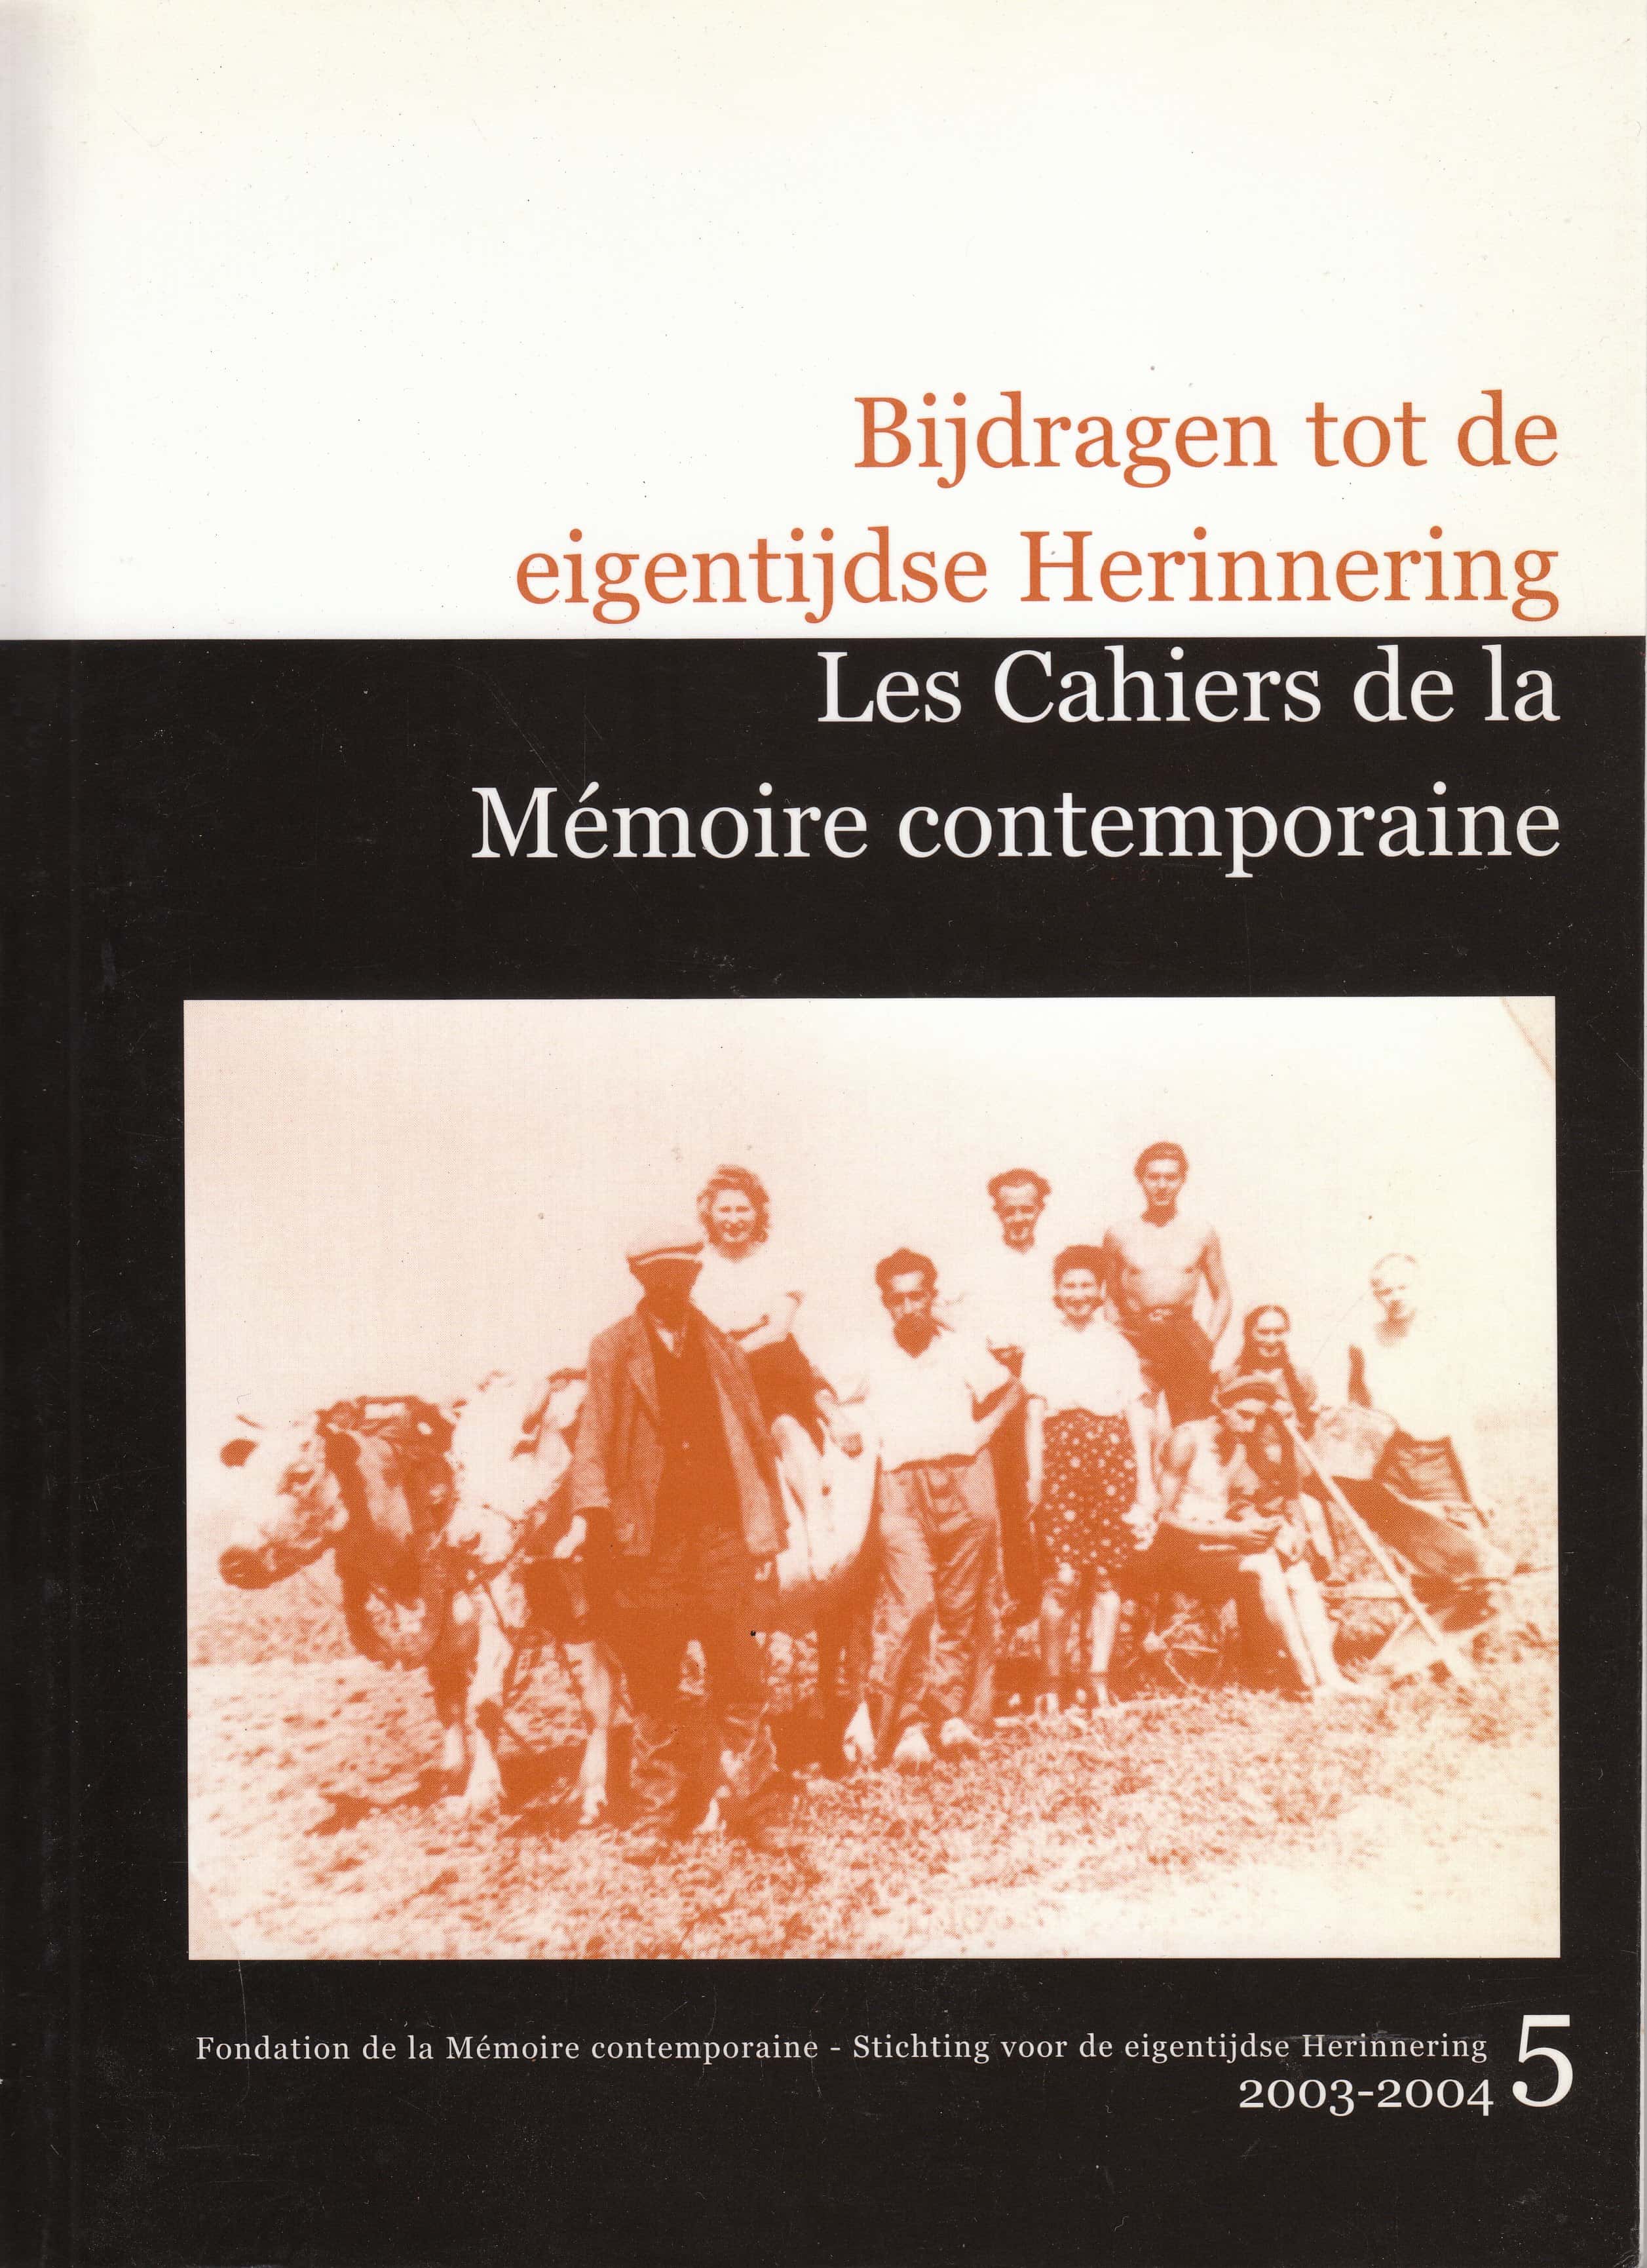 Les Cahiers de la Mémoire Contemporaine 5-2003-2004